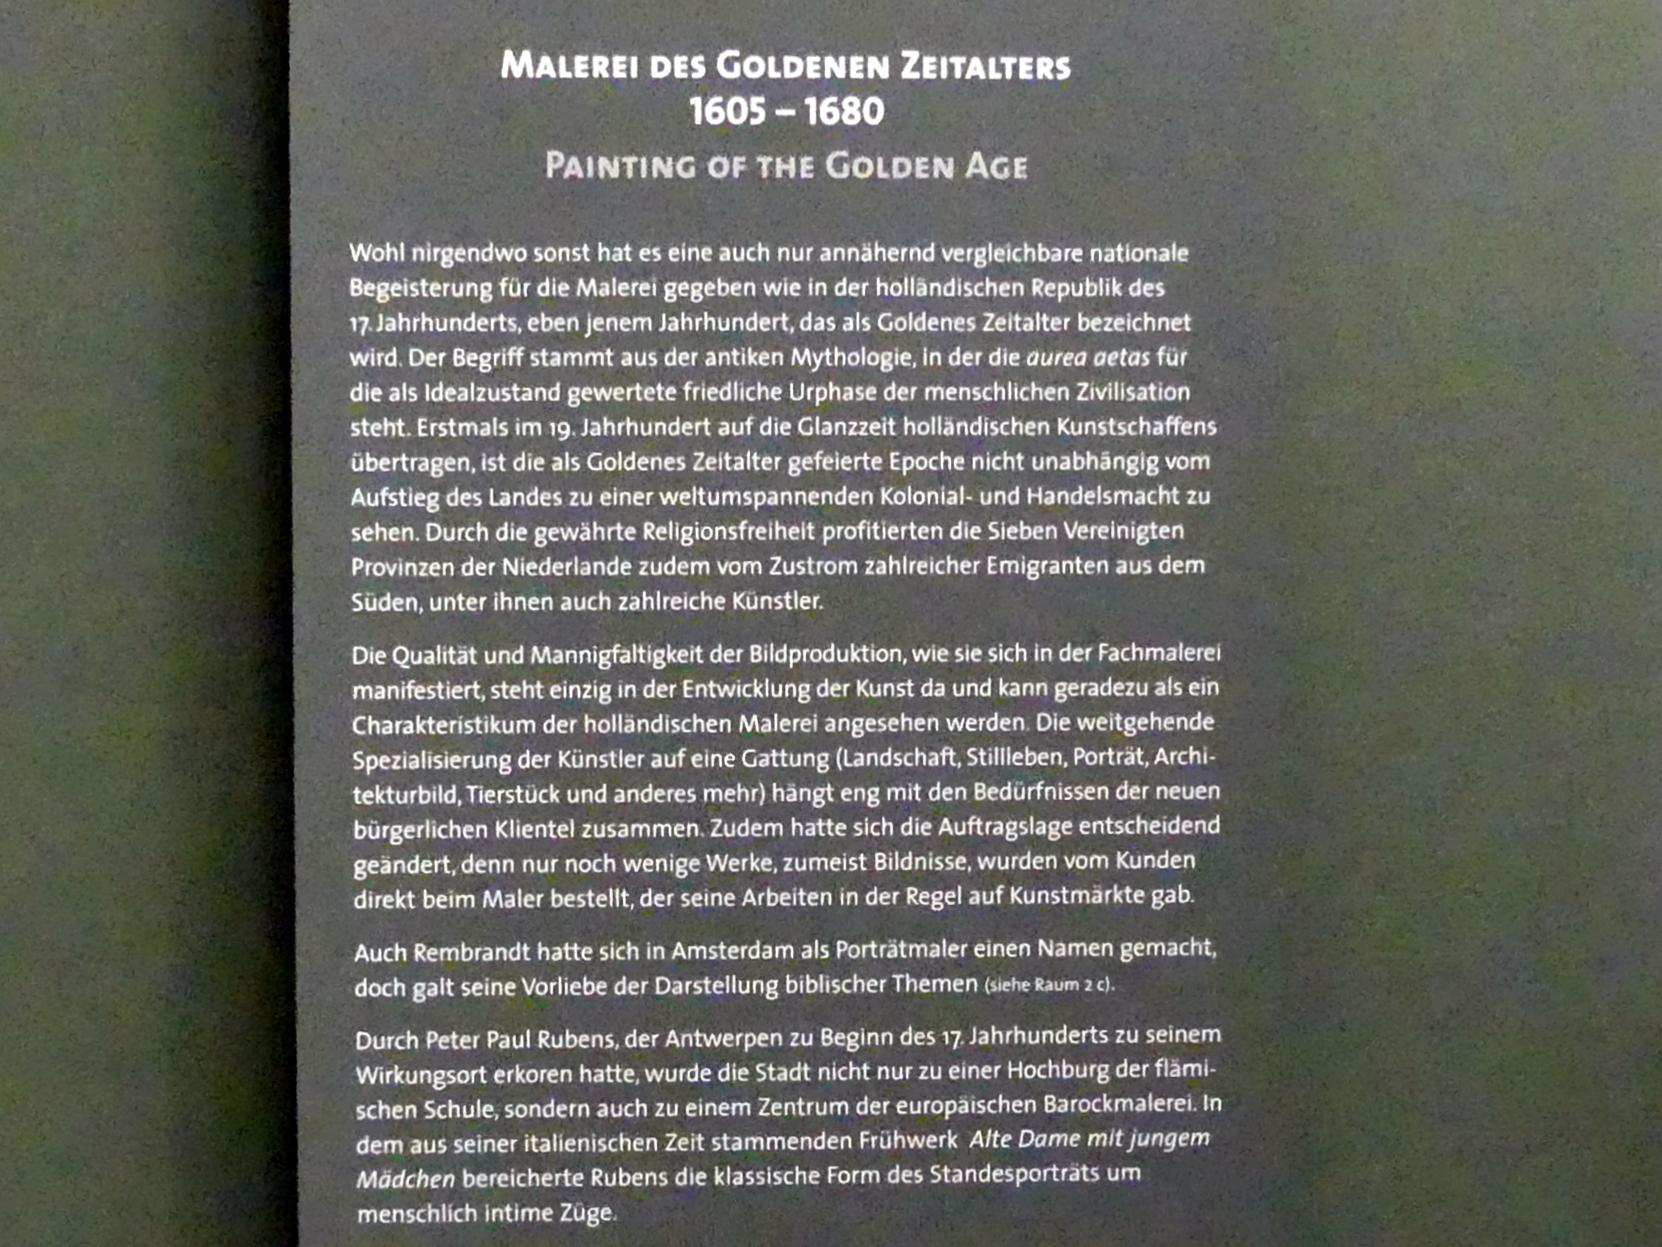 Stuttgart, Staatsgalerie, Niederländische Malerei 4, Bild 3/3